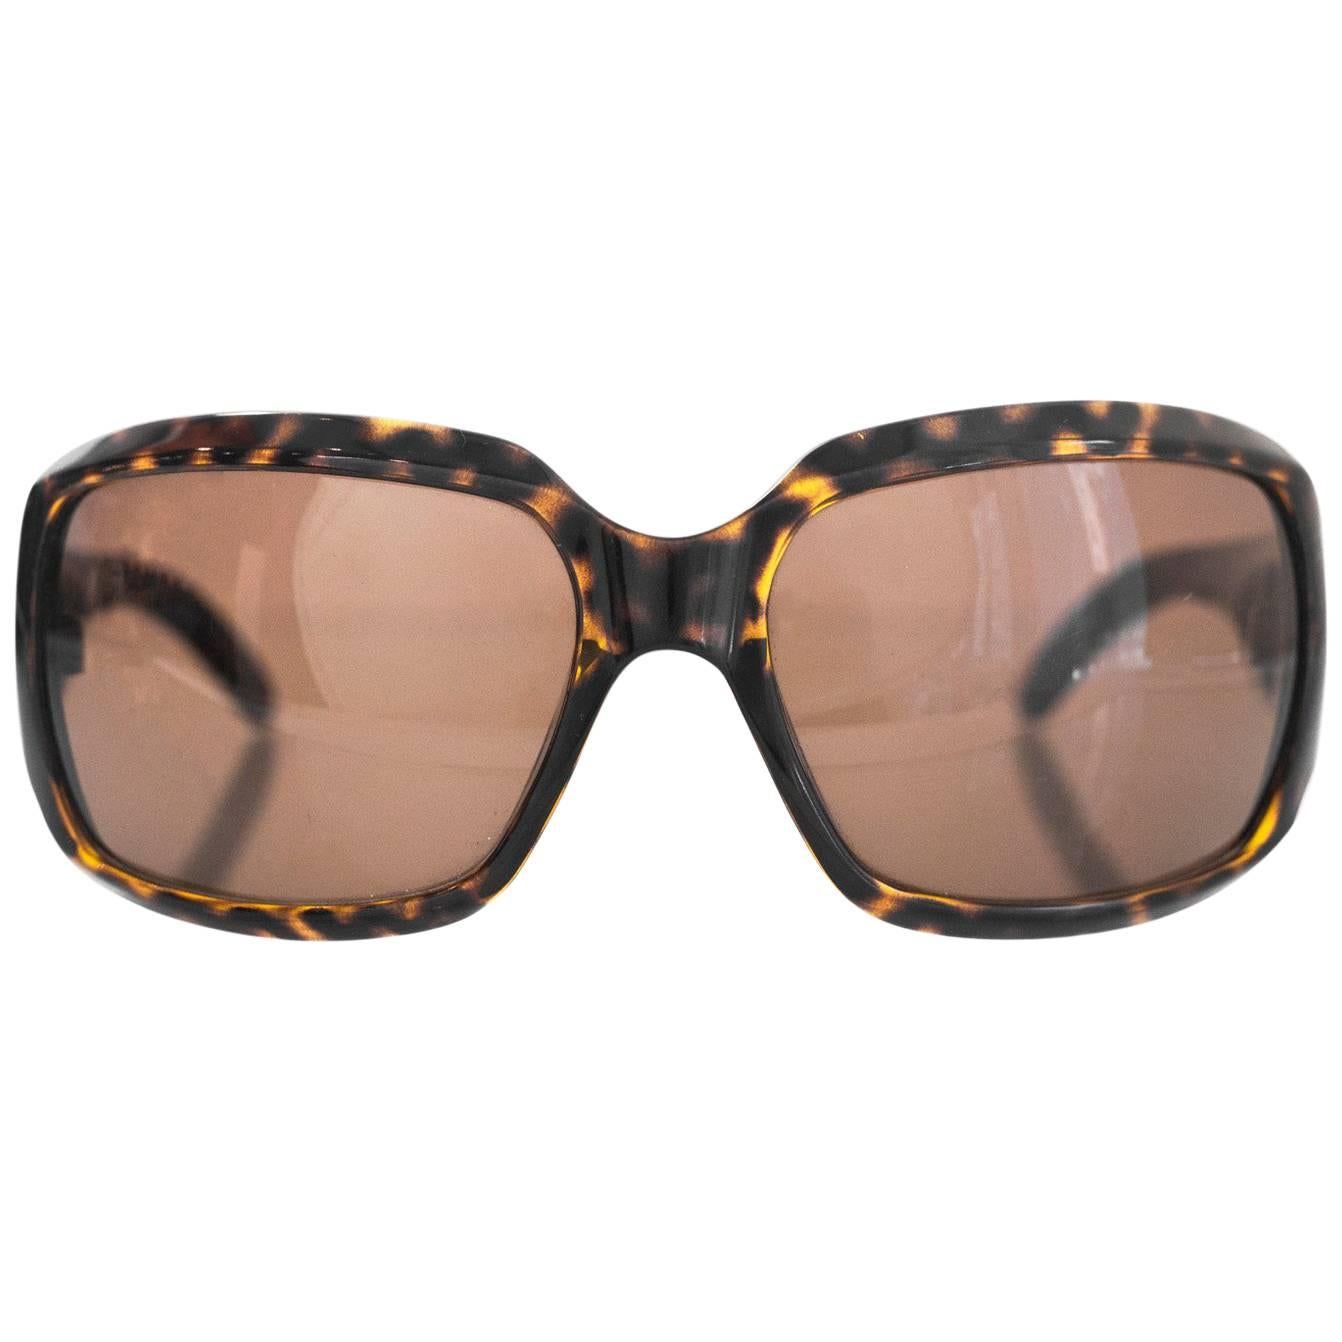 Emporio Armani Tortoise Square Sunglasses with Case